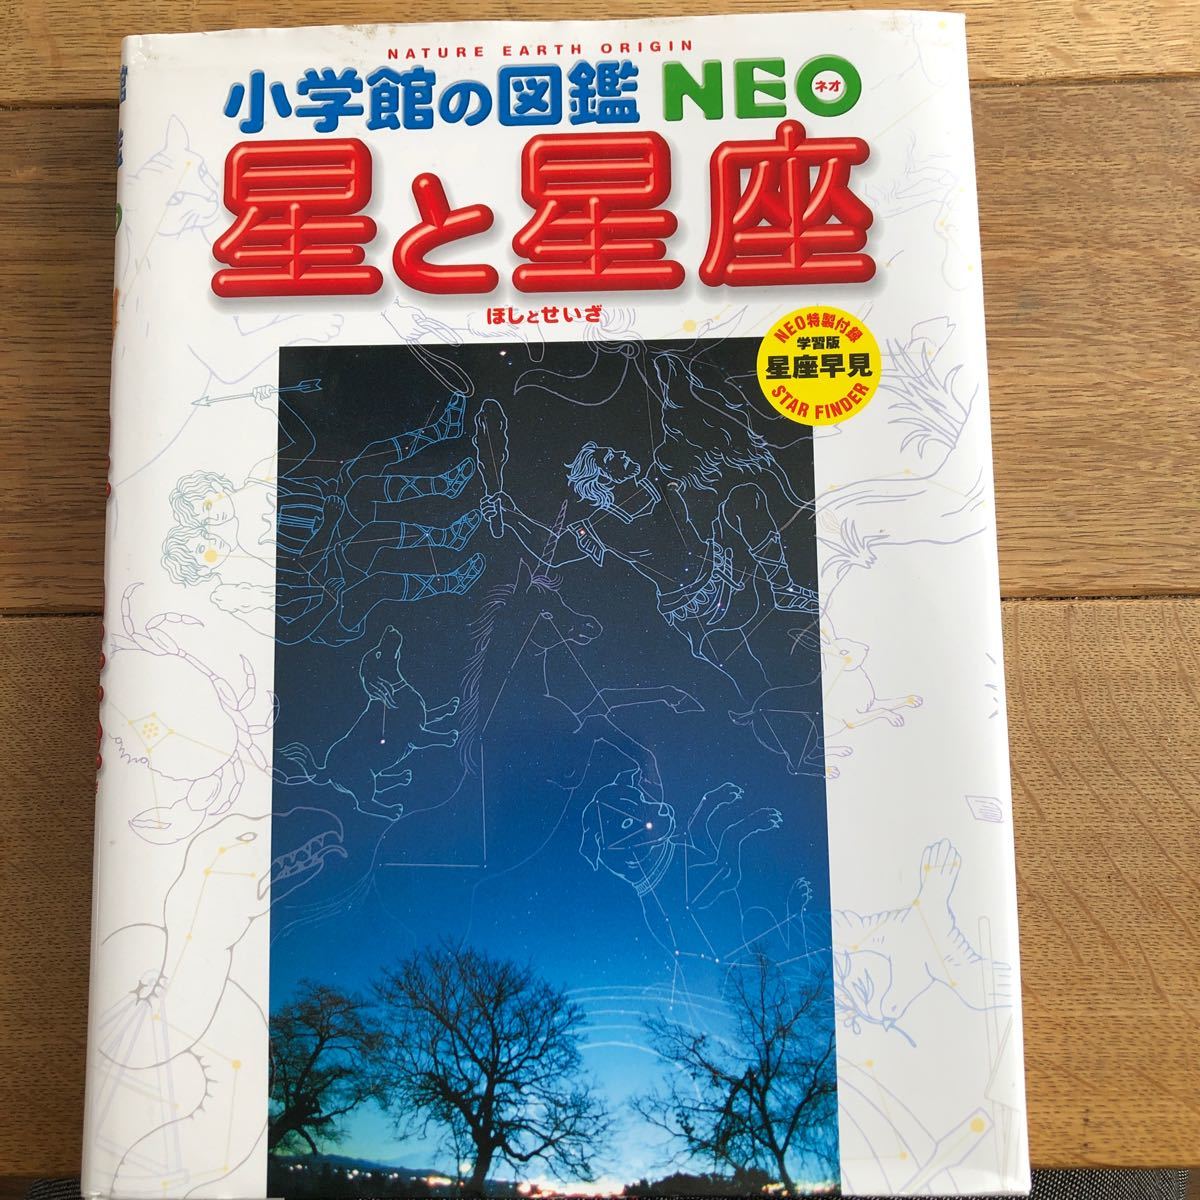 小学館の図鑑NEO 星と星座